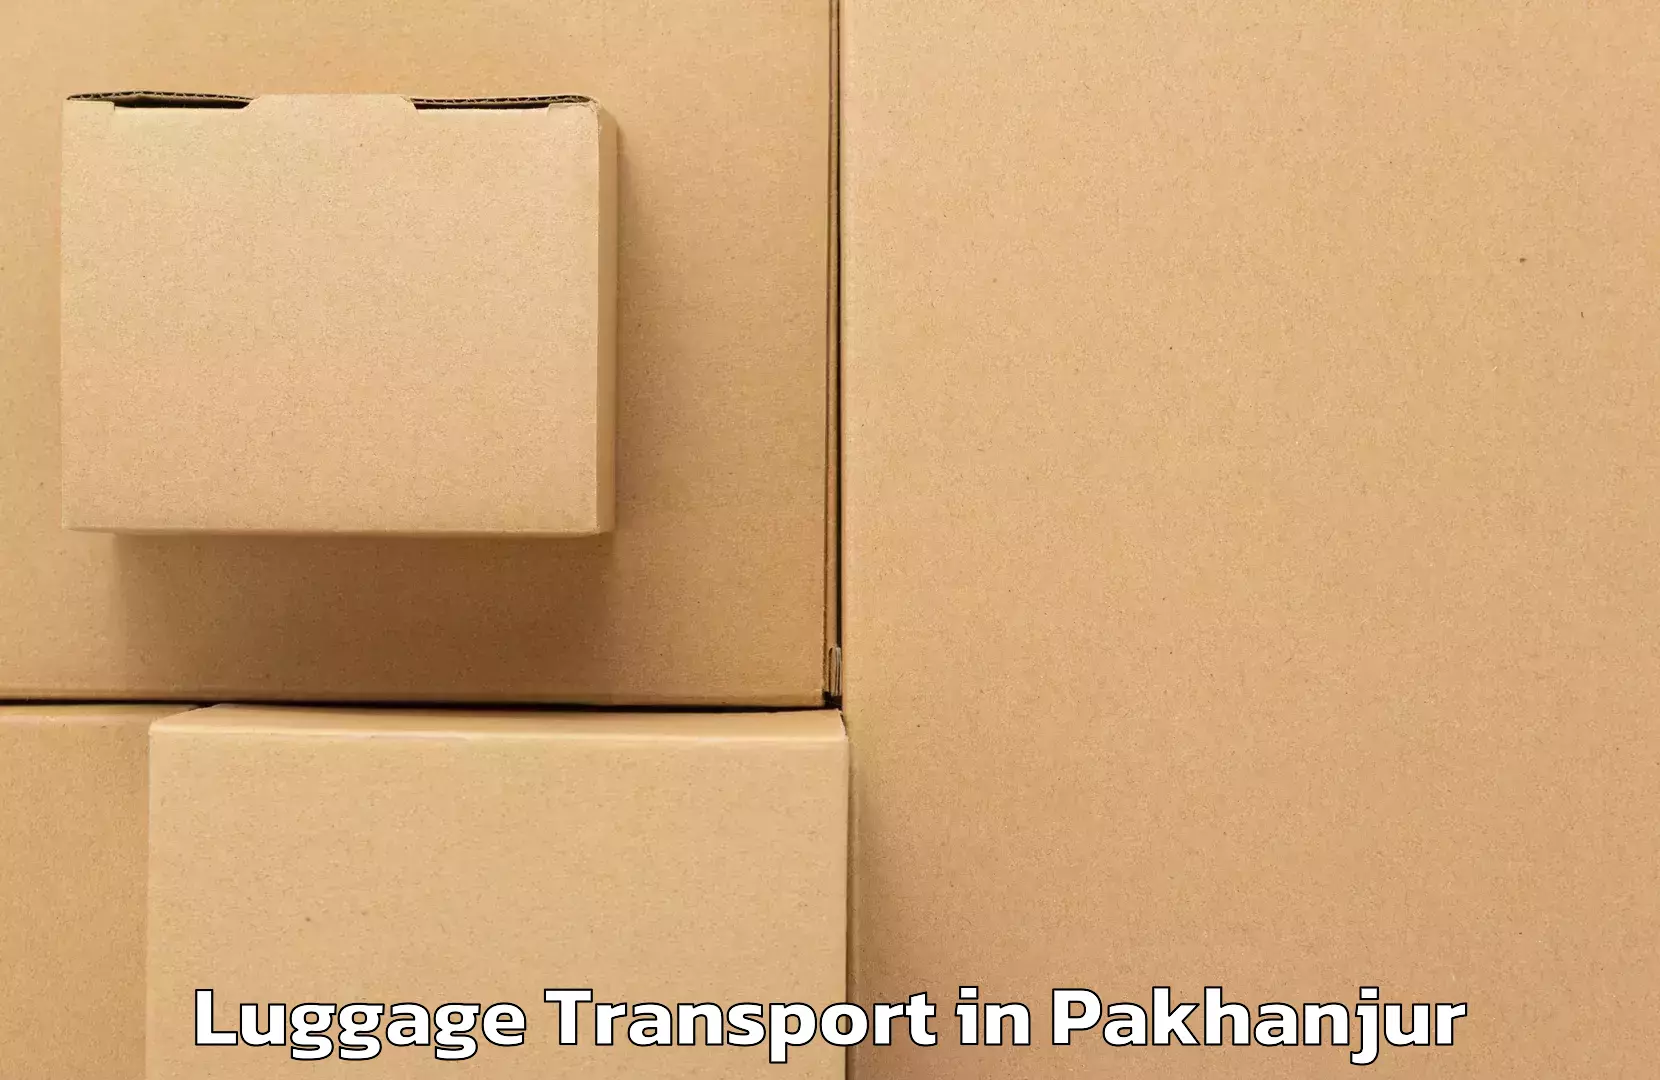 Luggage shipment logistics in Pakhanjur